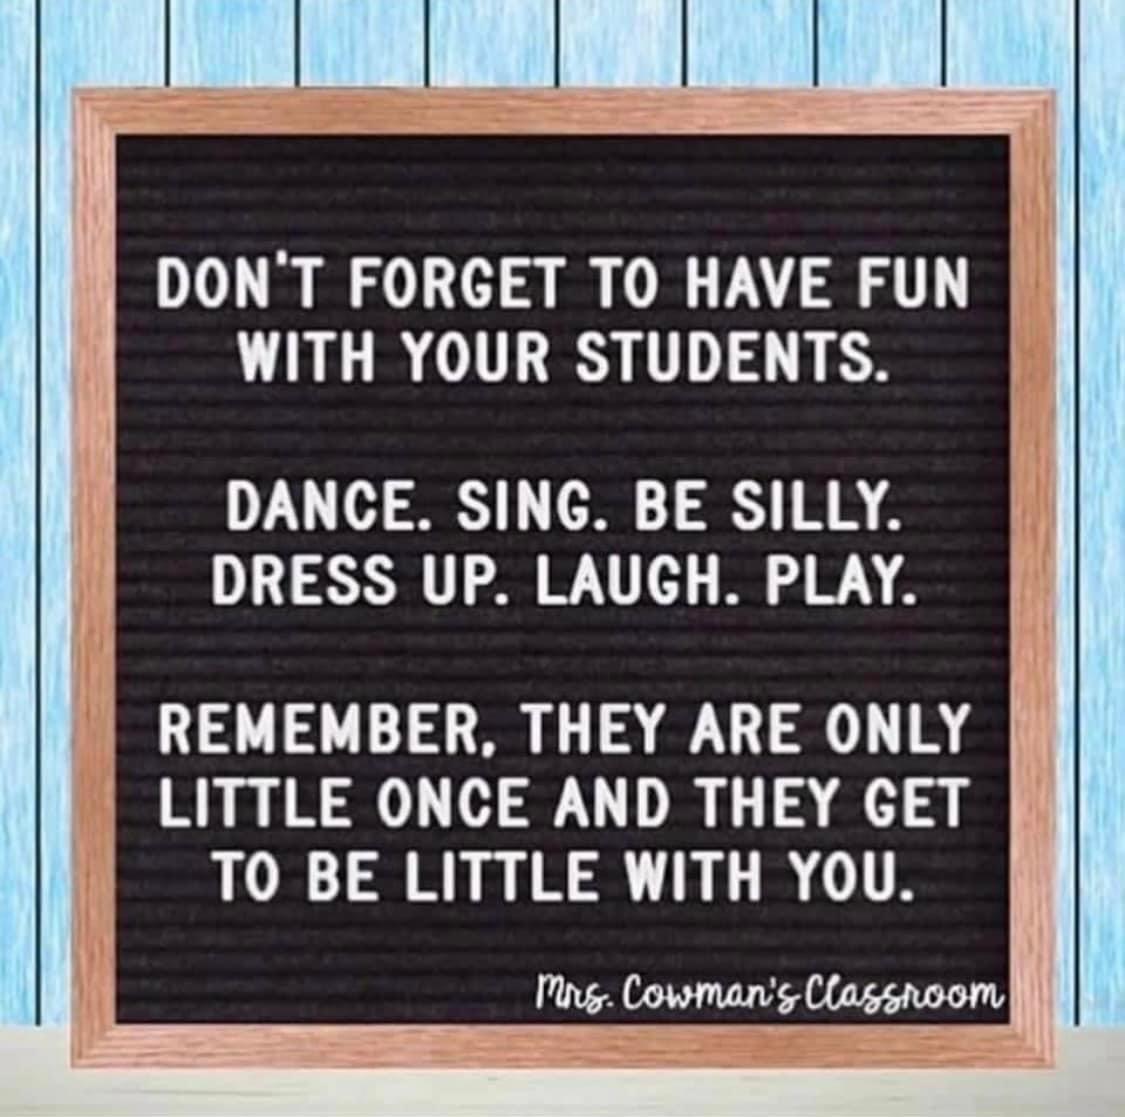 Don’t forget #teachertwitter #elementaryteacher ❤️